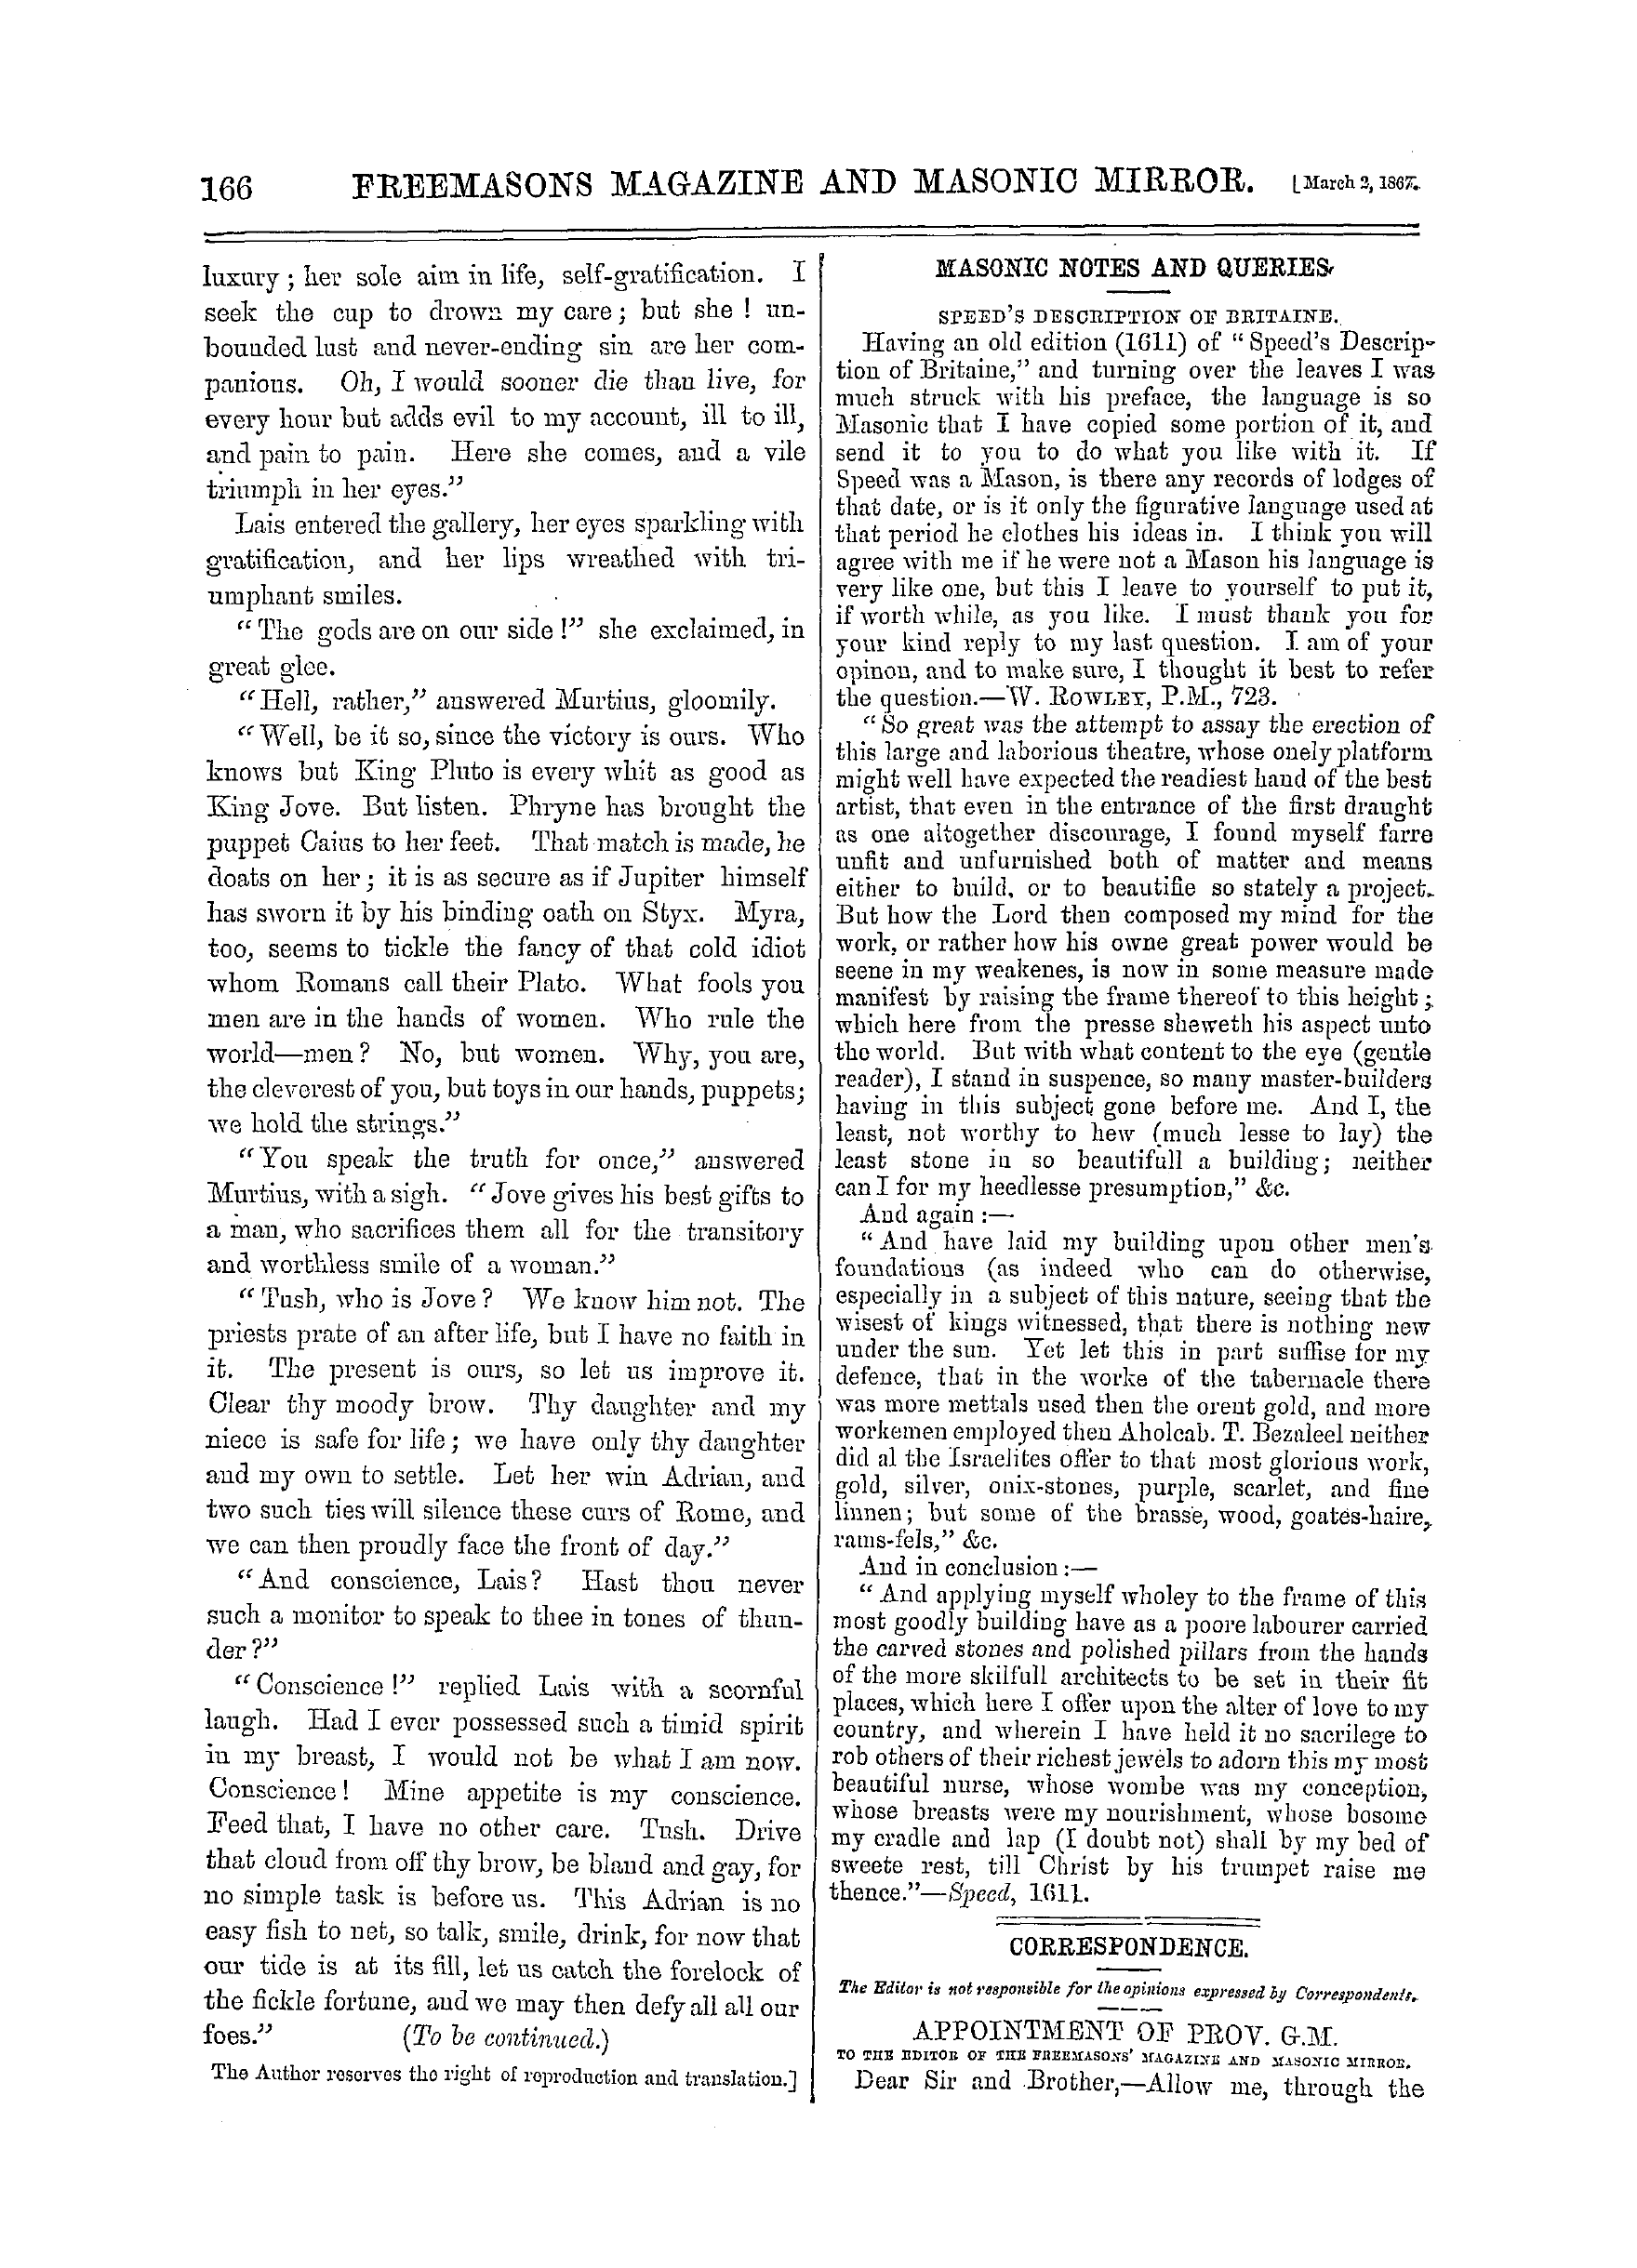 The Freemasons' Monthly Magazine: 1867-03-02: 6